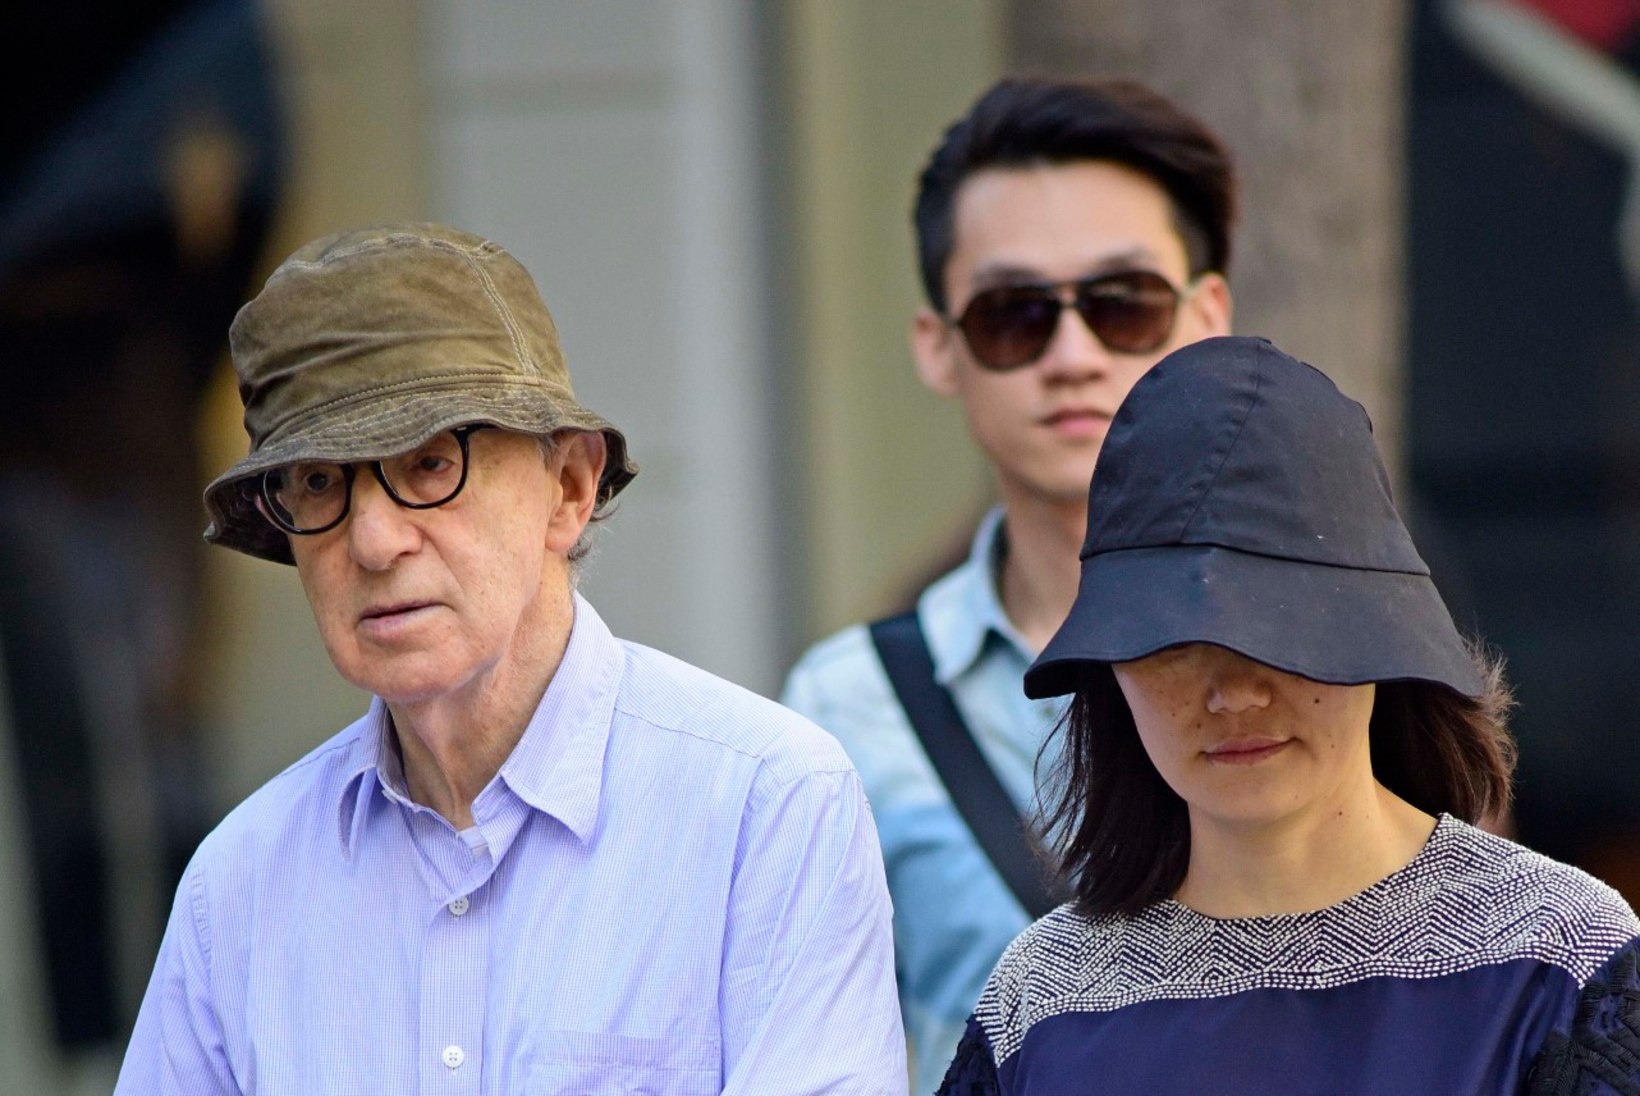 FOTOD: Woody Allen käis koos oma 37 aastat noorema abikaasaga jalutuskäigul